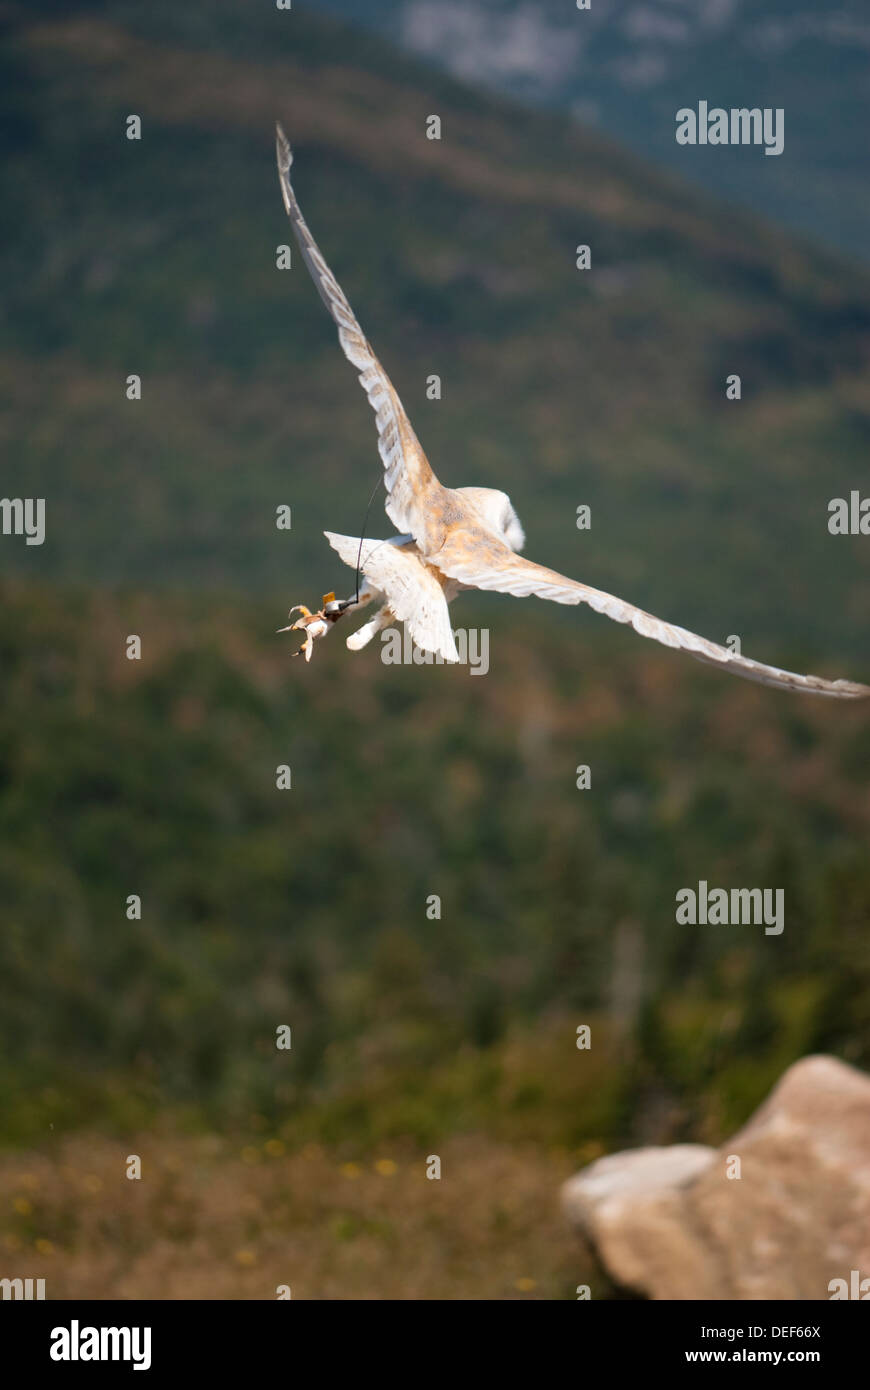 Lechuza volando en un espectáculo de aves de presa Foto de stock